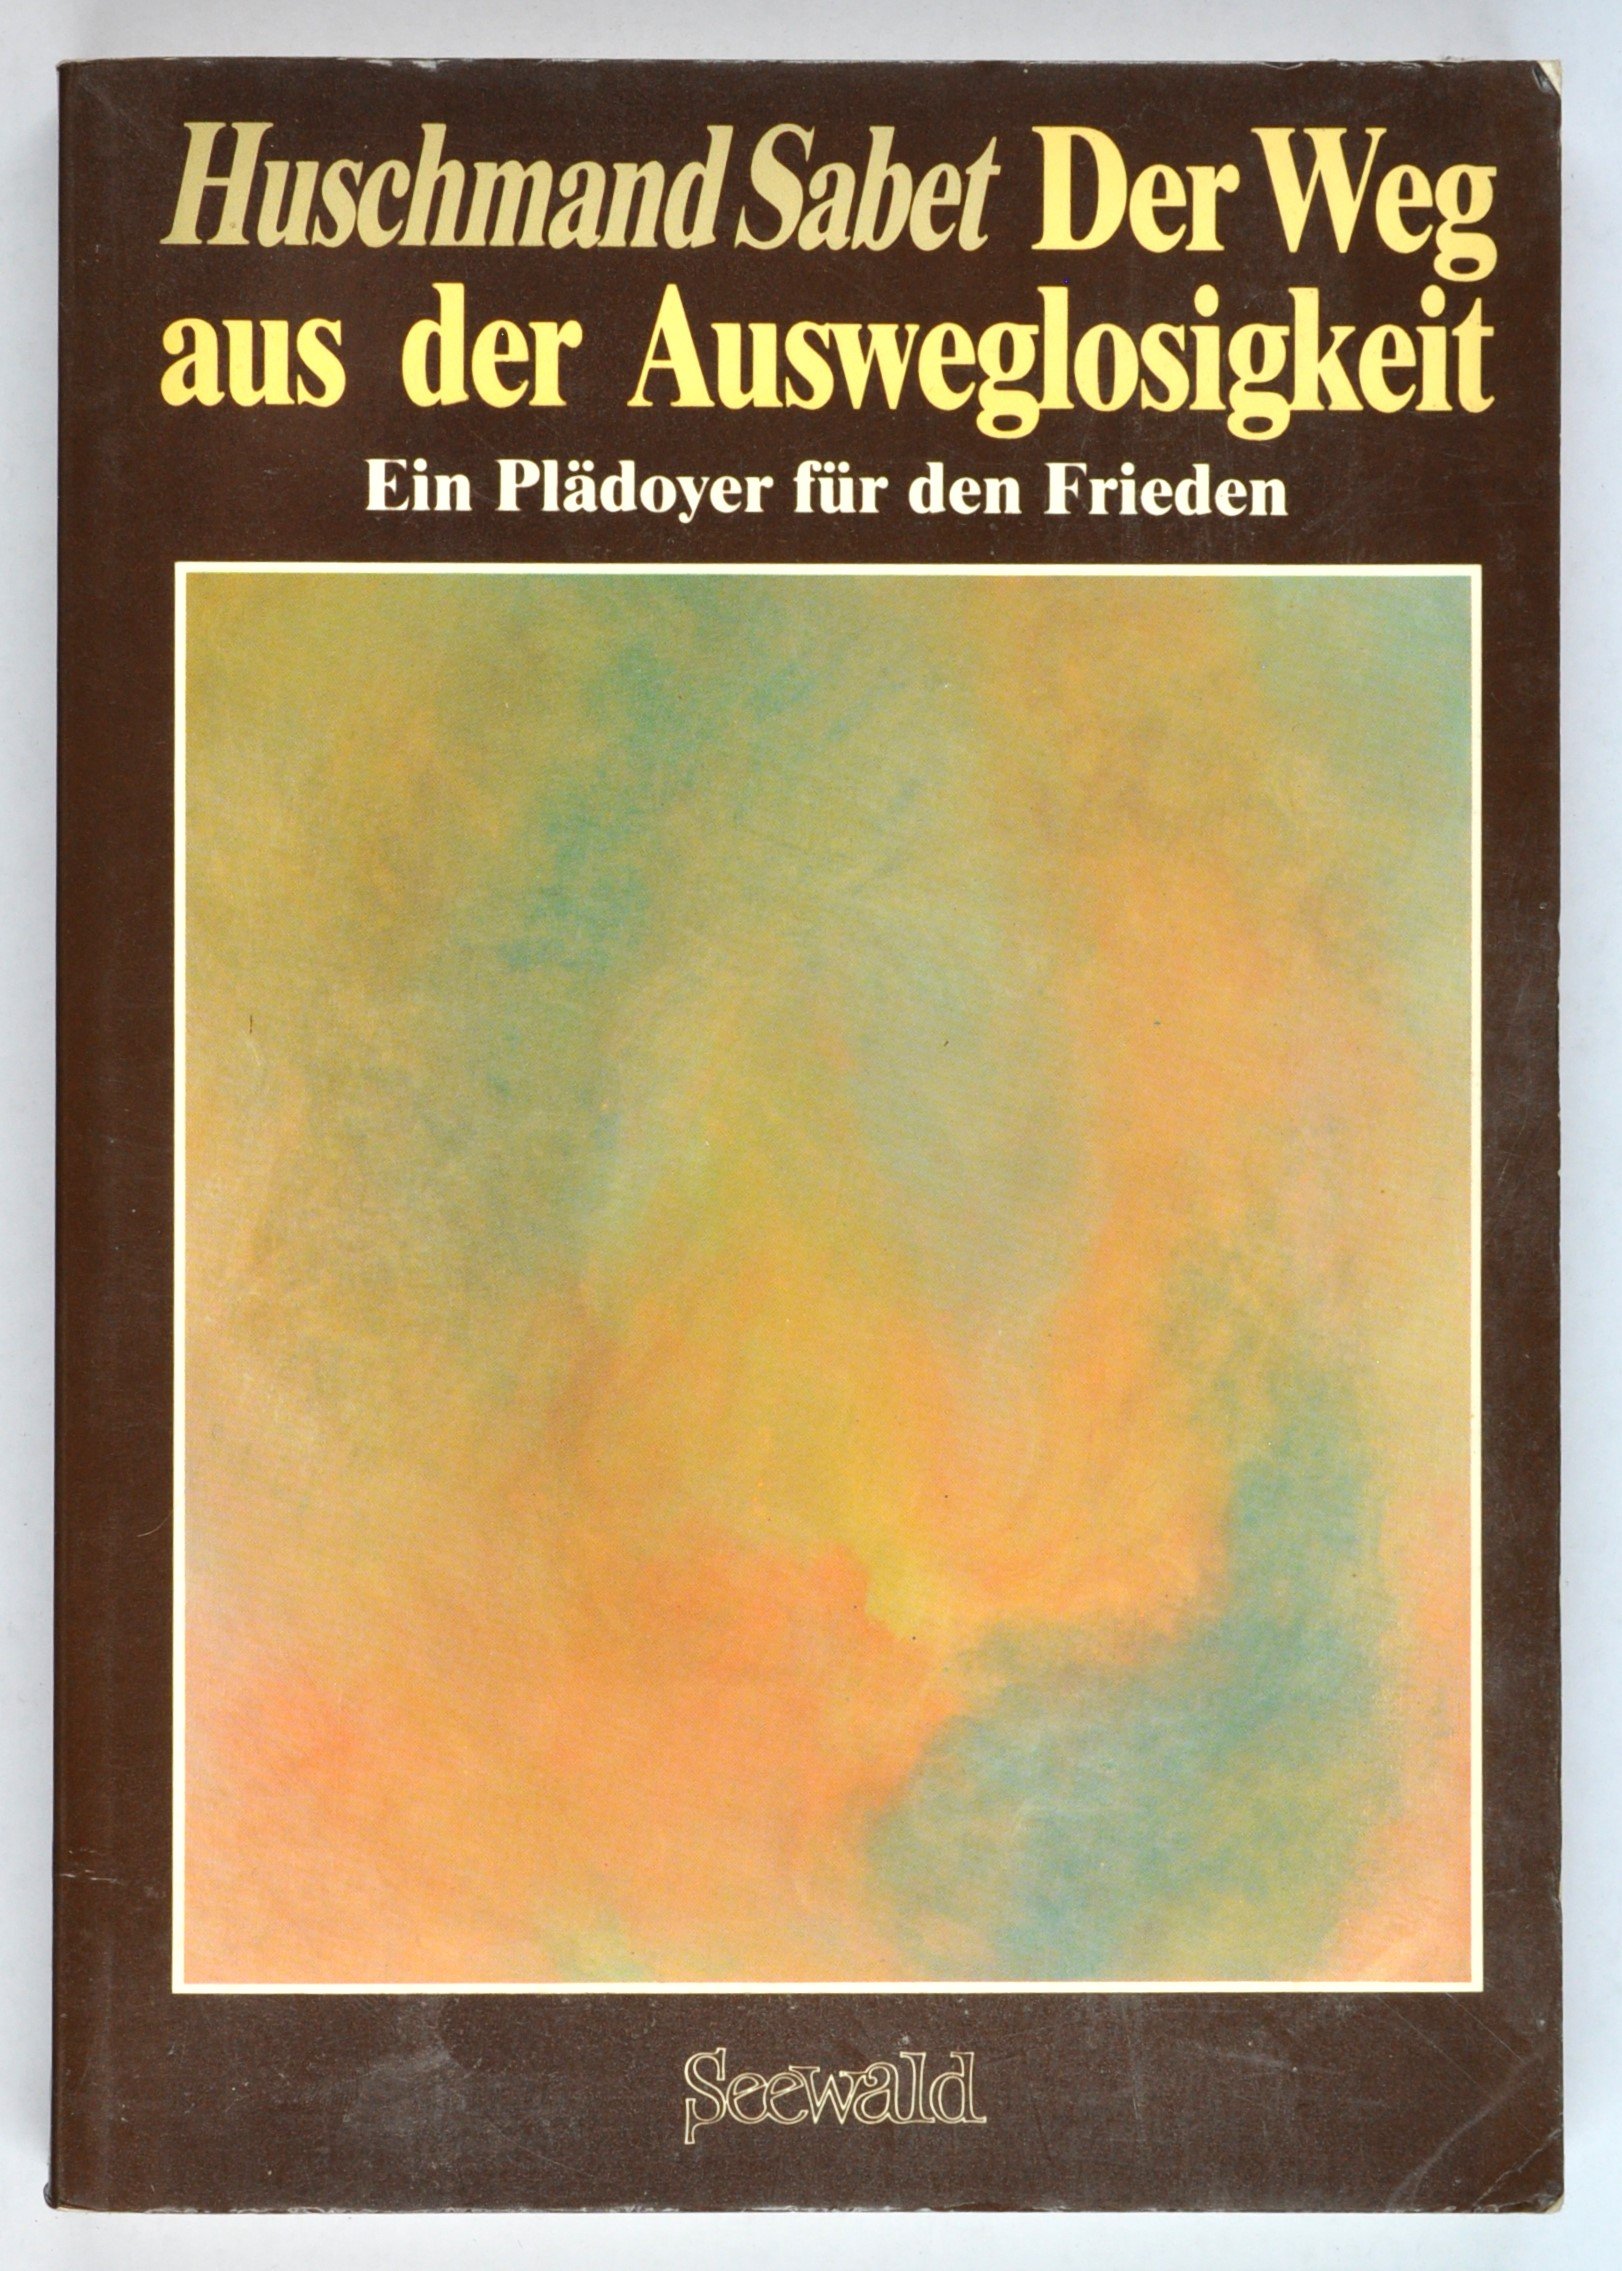 Buch: Huschmand Sabet: Der Weg aus der Ausweglosigkeit. Ein Plädoyer für den Frieden, Stuttgart/Herford 1985 (DDR Geschichtsmuseum im Dokumentationszentrum Perleberg CC BY-SA)